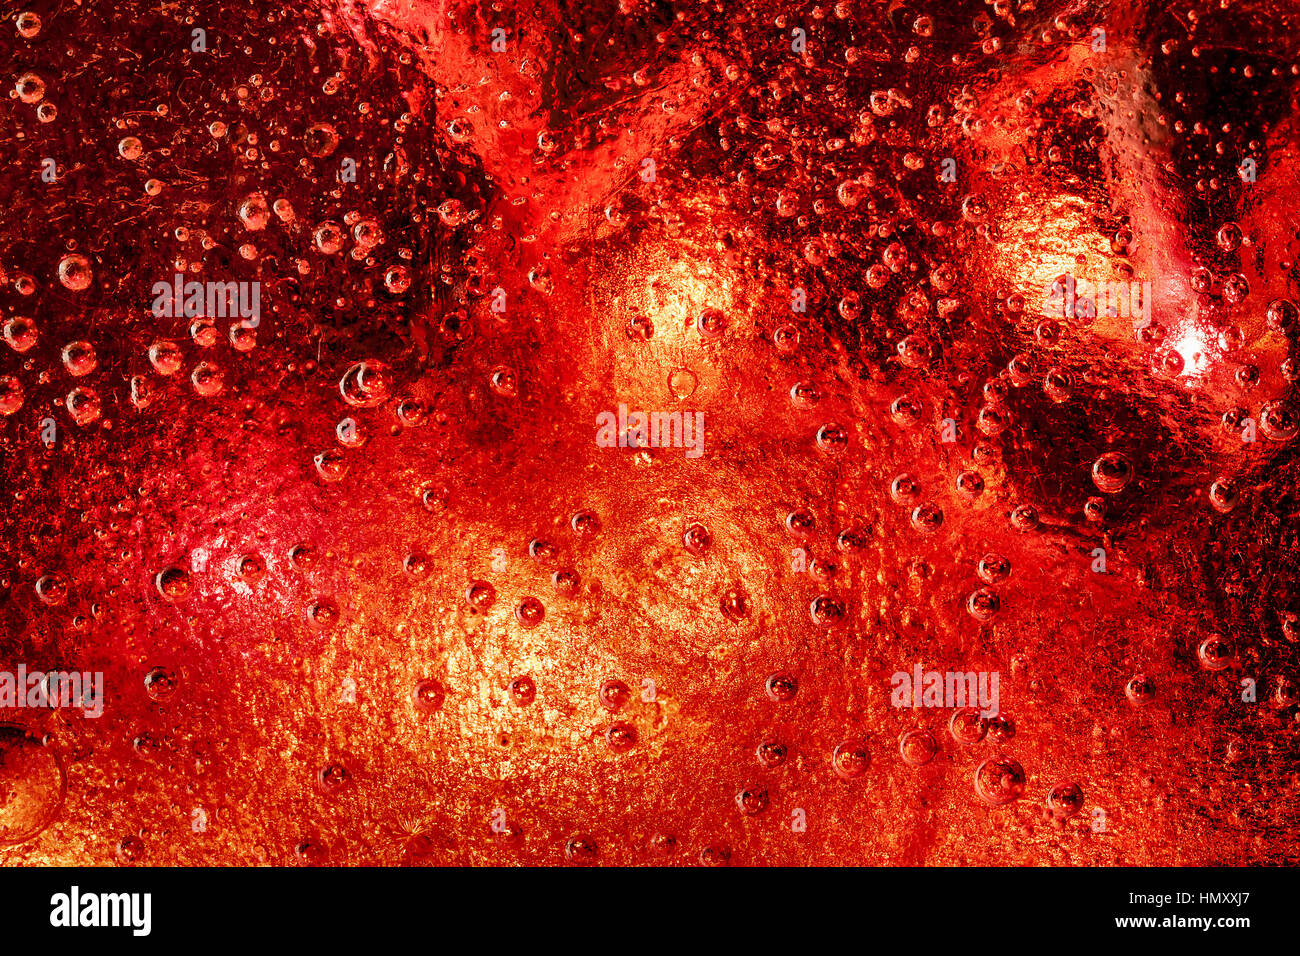 Gefrorene Eiskristalle mit schönen roten Farbe unten. Große und kleine eingeschlossene Luftblasen alles über das Eis. Stockfoto